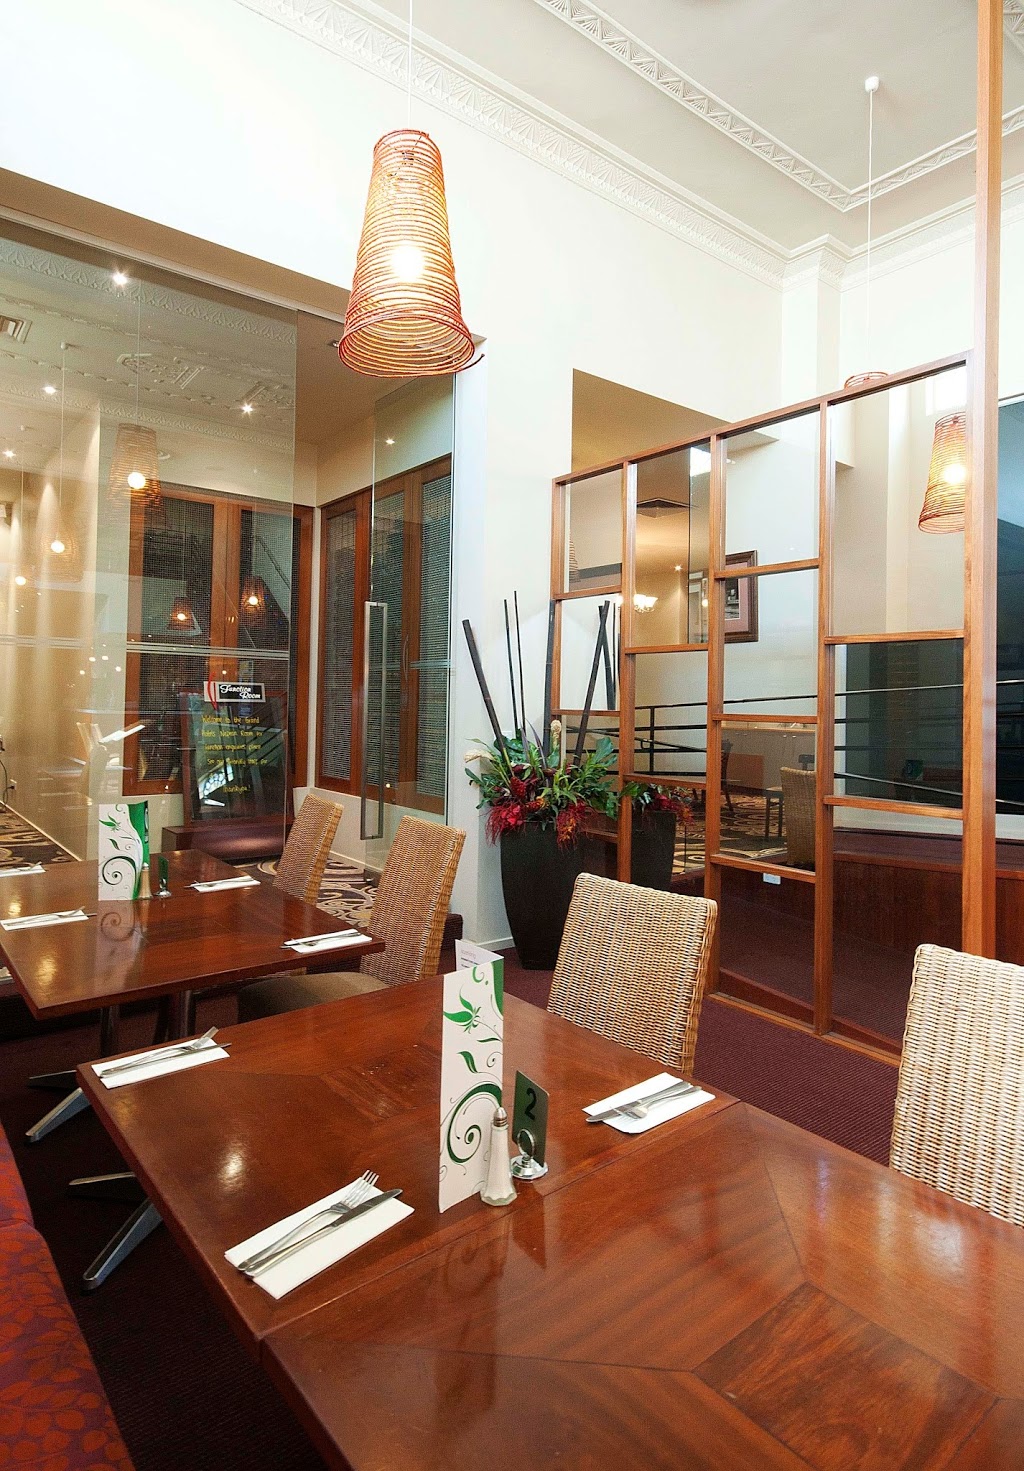 The Grand Hotel - Frankston | restaurant | 499 Nepean Hwy, Frankston VIC 3199, Australia | 0397837388 OR +61 3 9783 7388